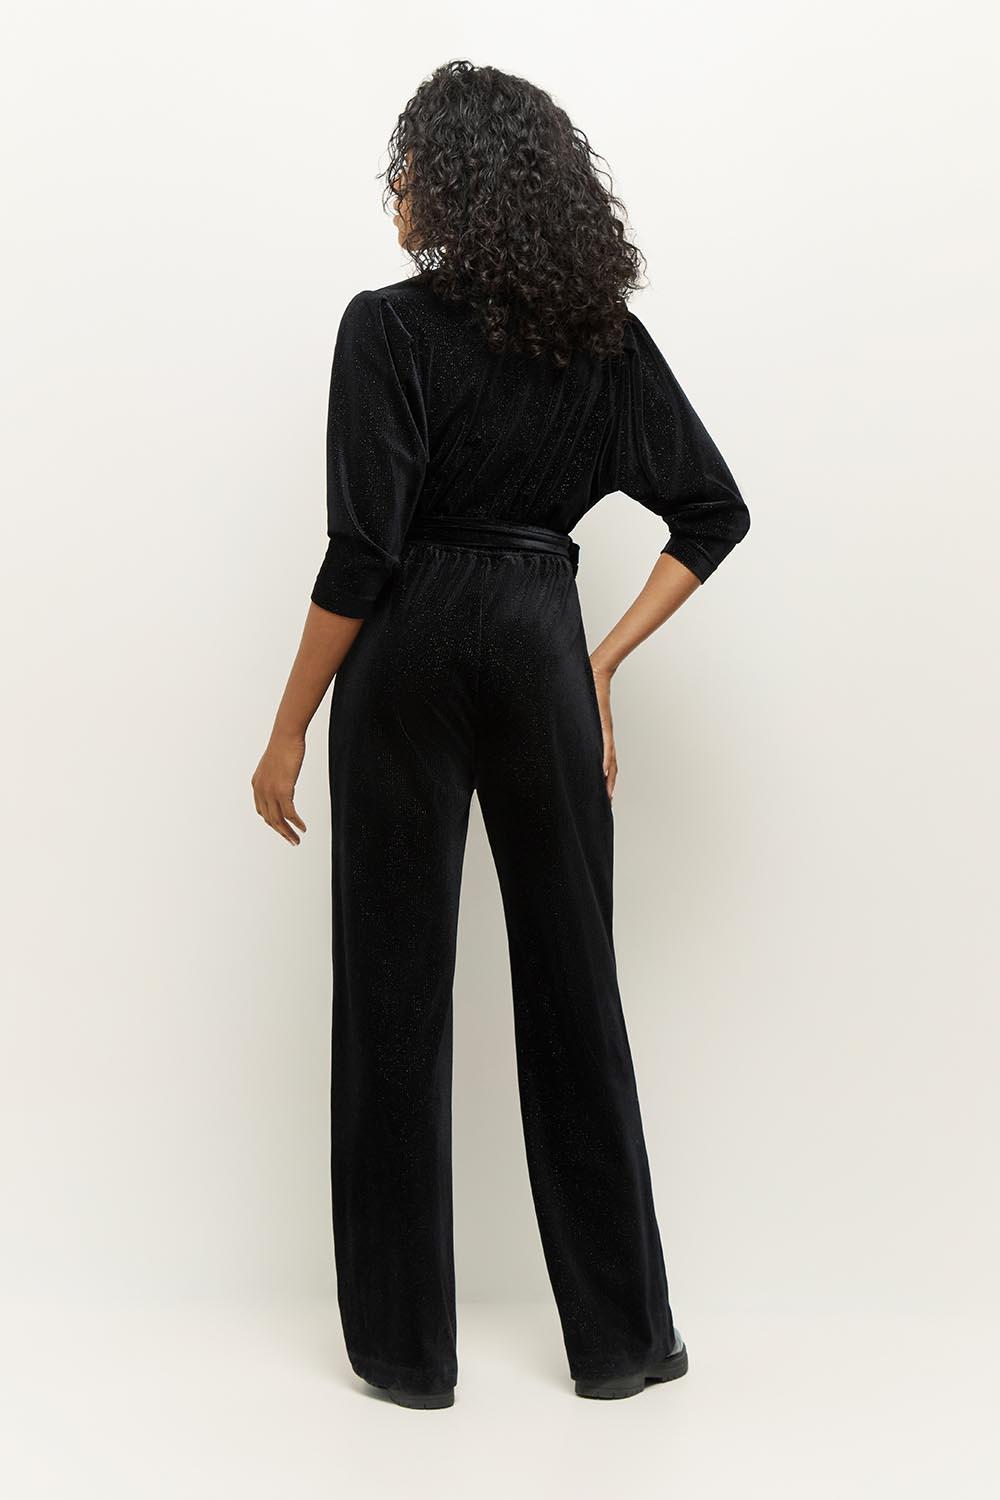 ROSE - Combinaison-pantalon noire en velours pailleté